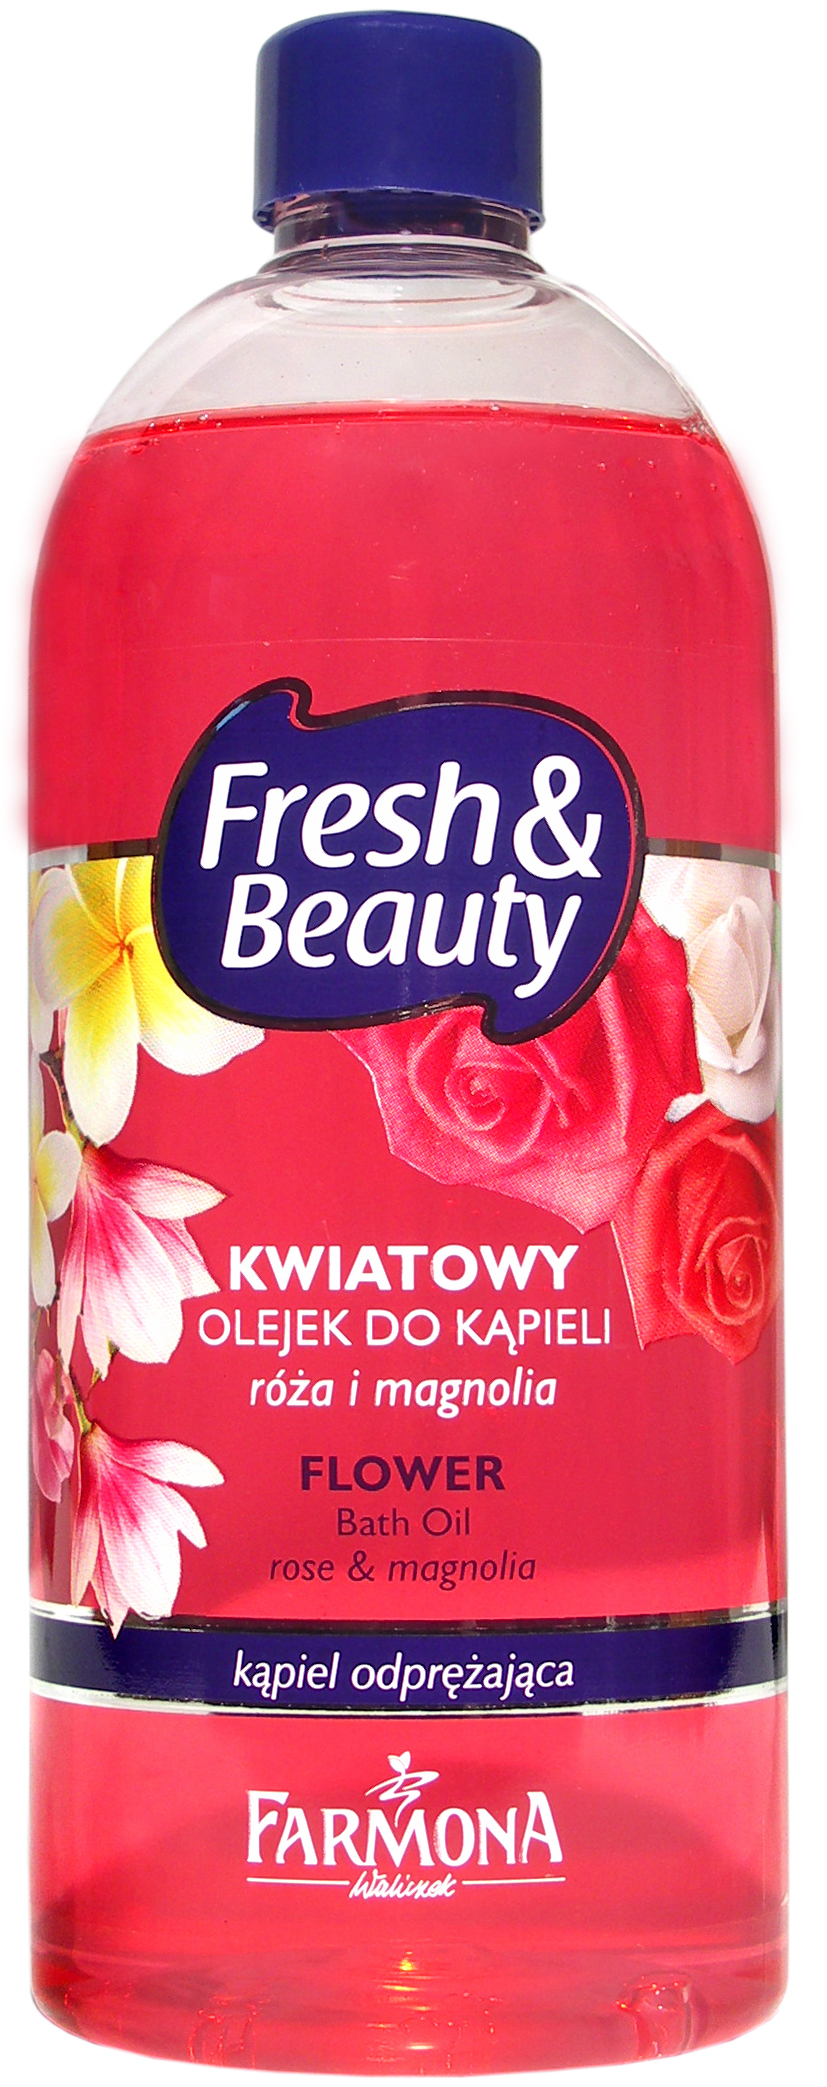 Farmona_Fresh&Beauty_olejek_roza